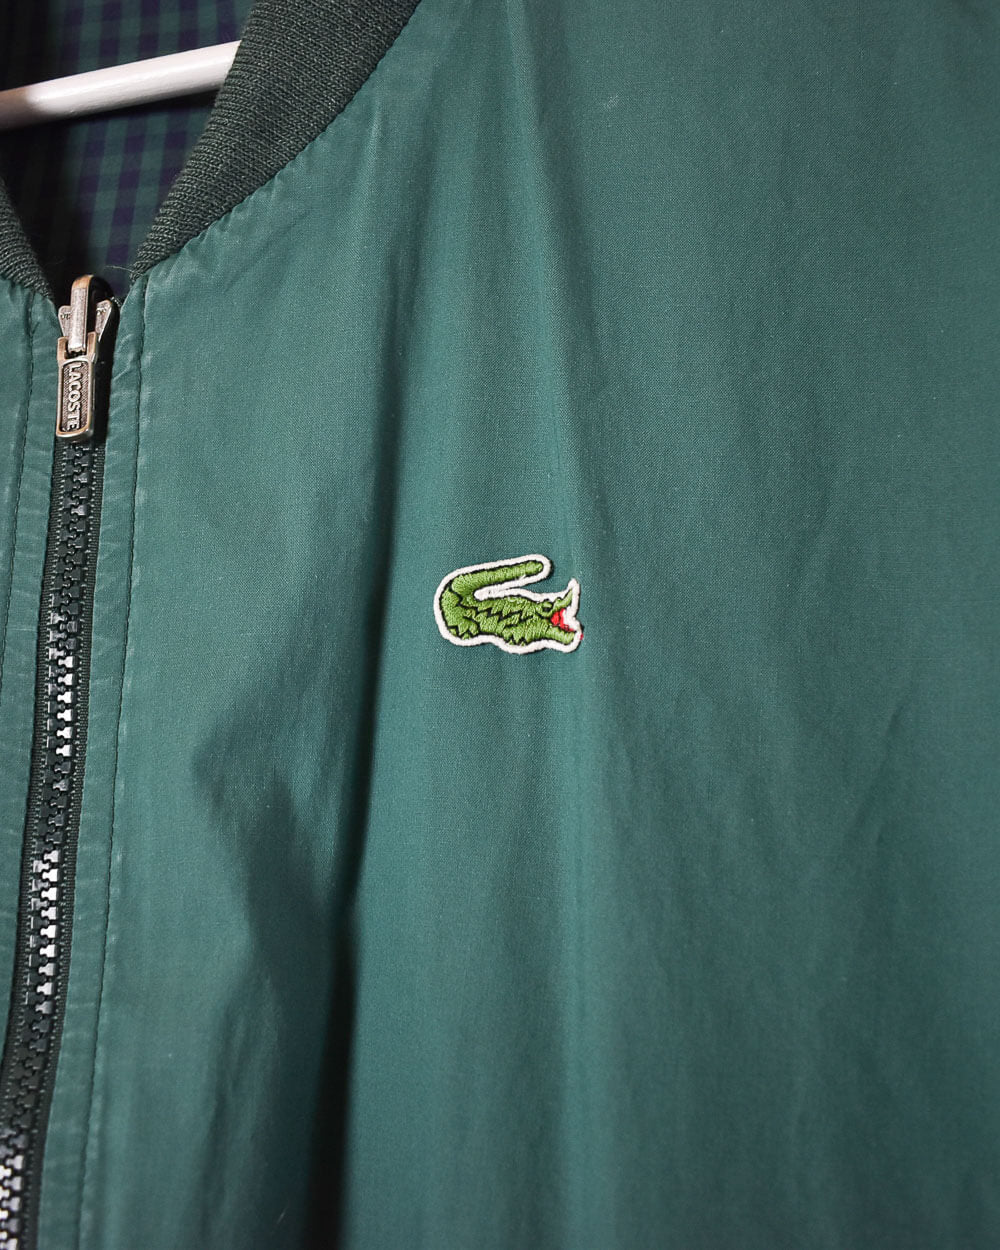 Green Chemise Lacoste Reversible Jacket - X-Large